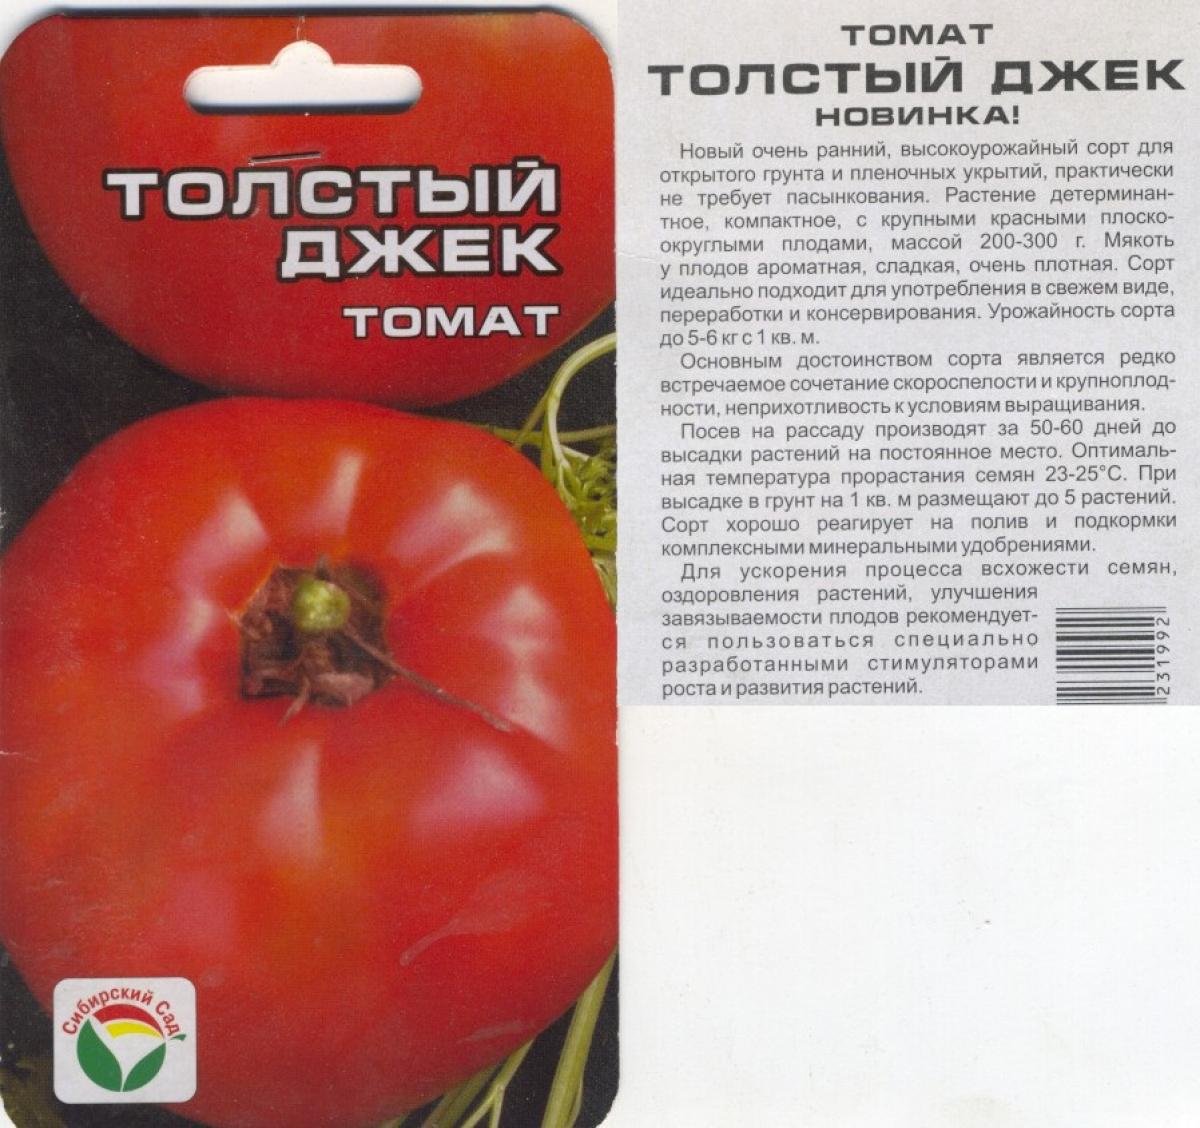 Томат ляна: описание и характеристика сорта, особенности выращивания помидоров, отзывы тех, кто сажал, фото и видео